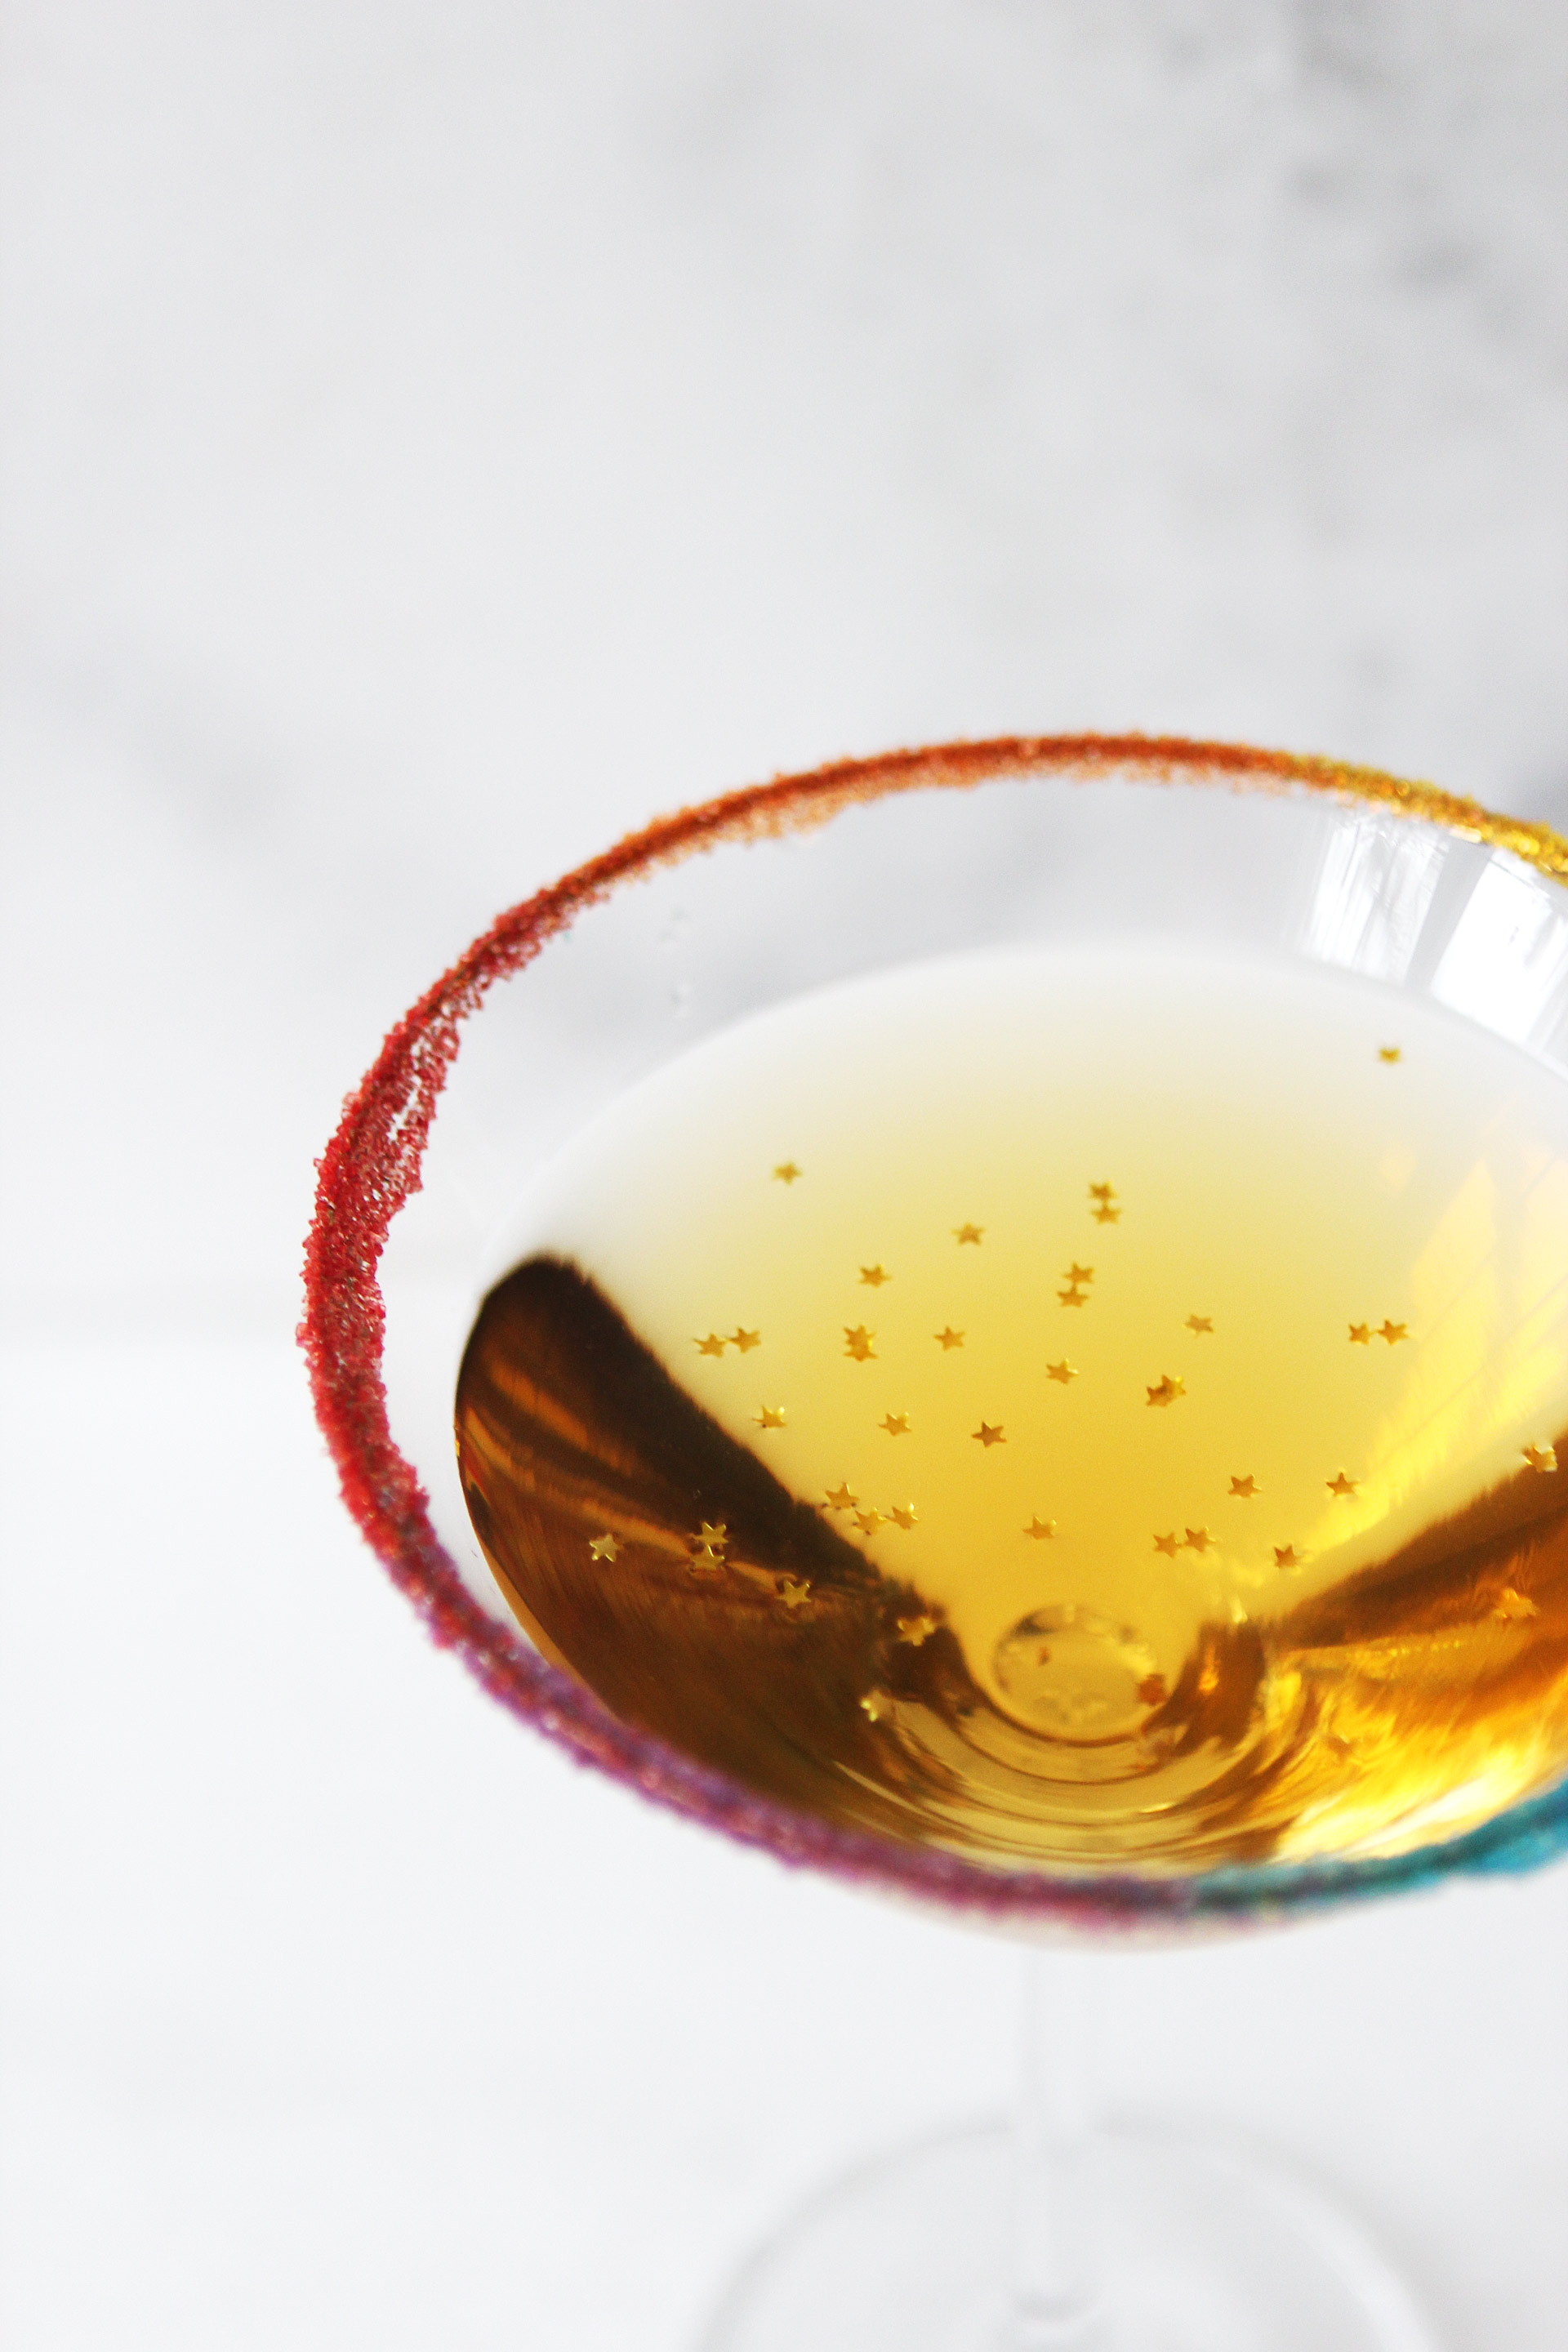 Pot O' Gold Cocktail | Alexandra Adams